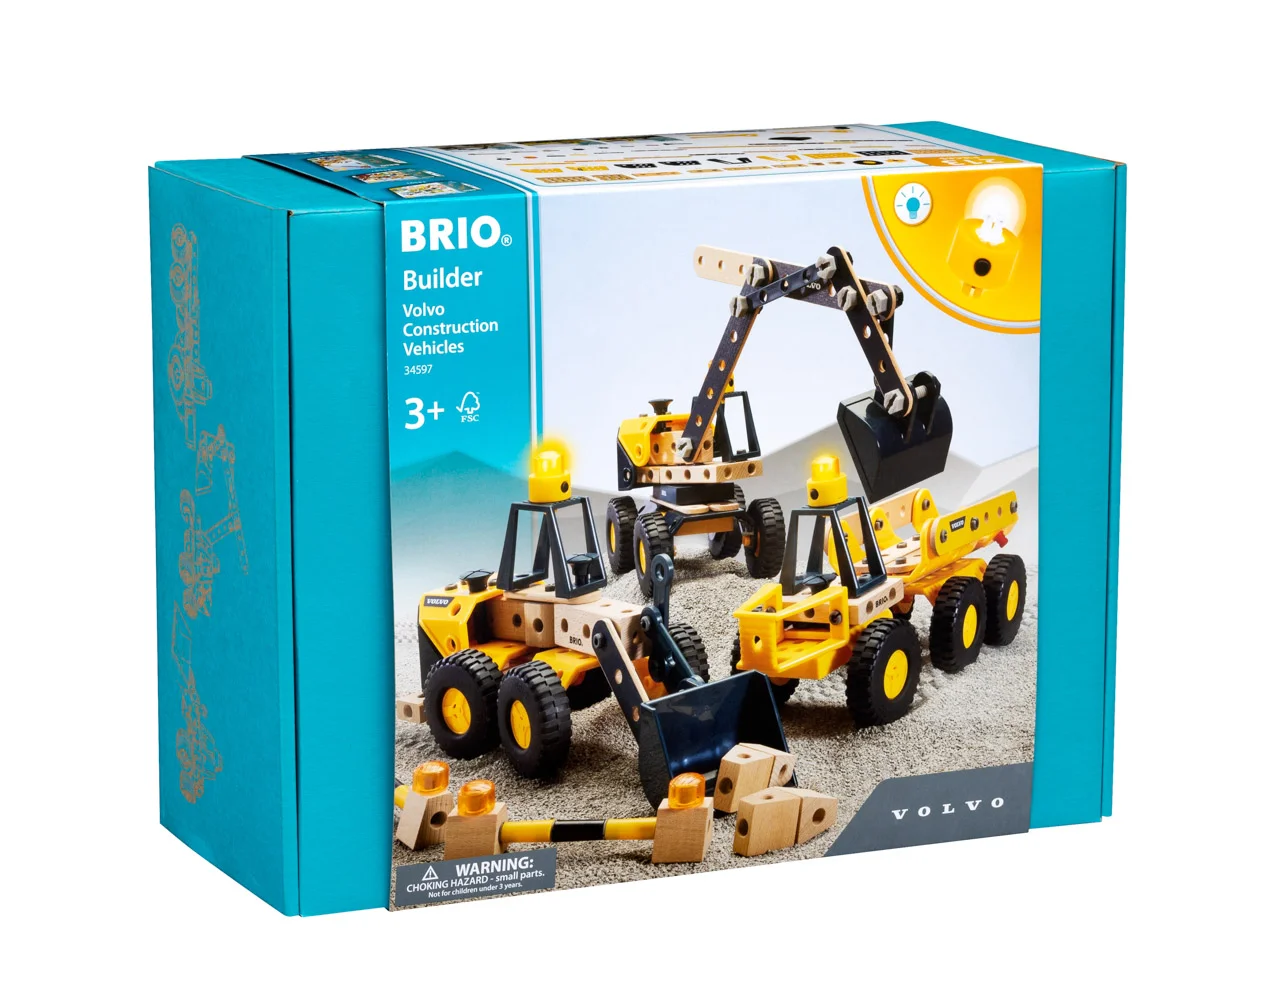 Builder - stavební vozidla Volvo, 3 stroje